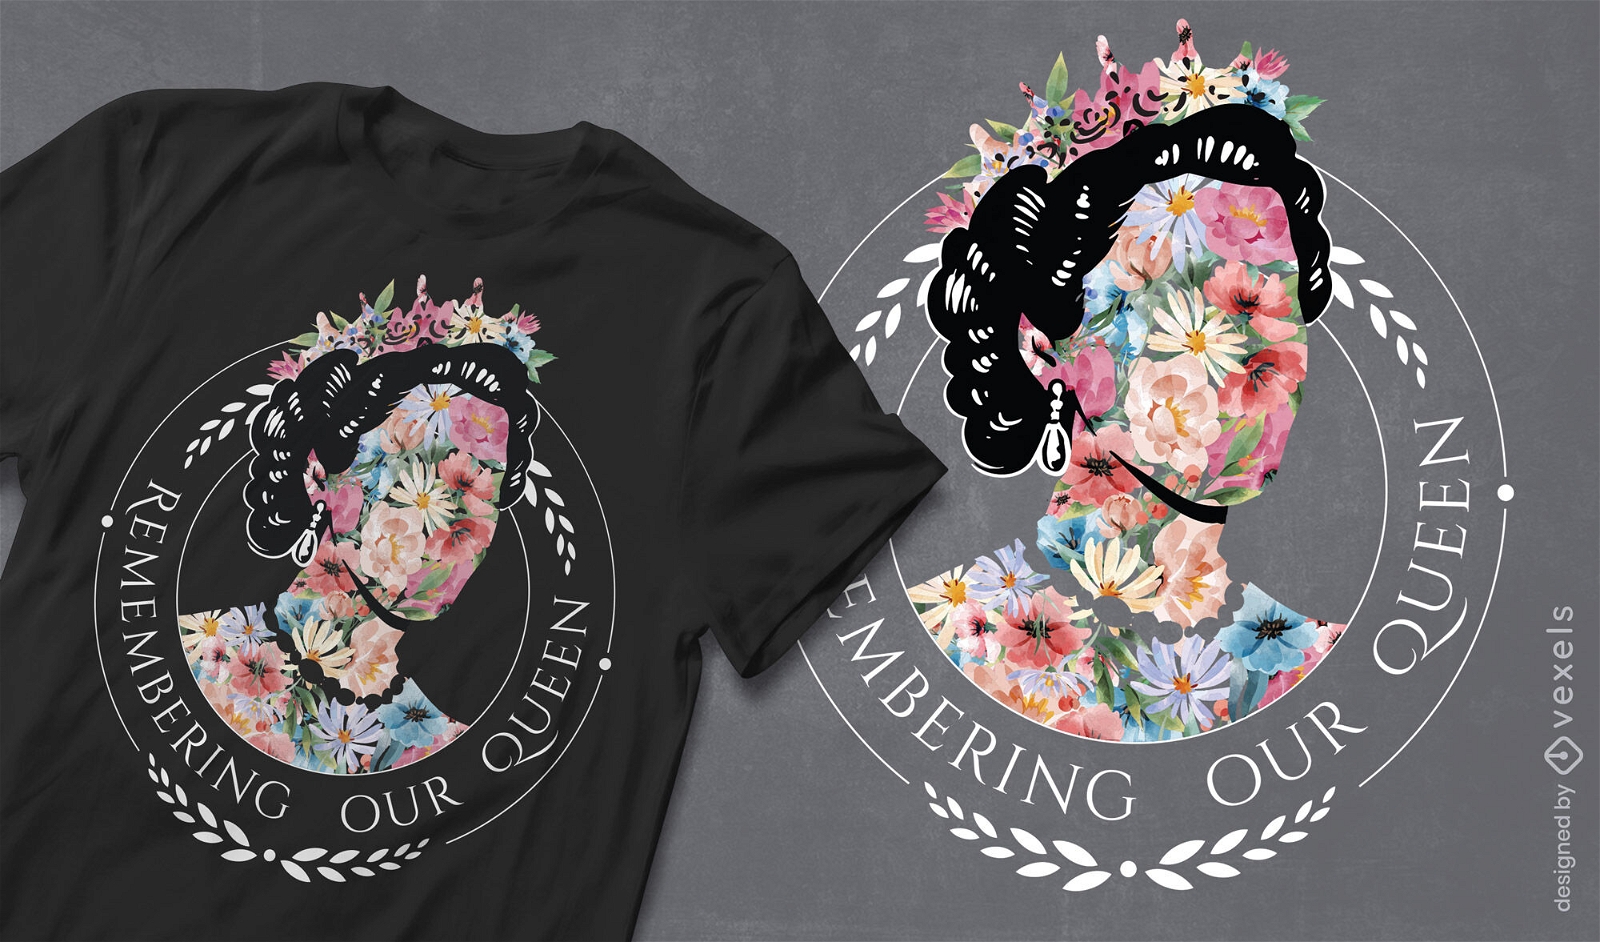 Königin aus Blumen-T-Shirt-Design